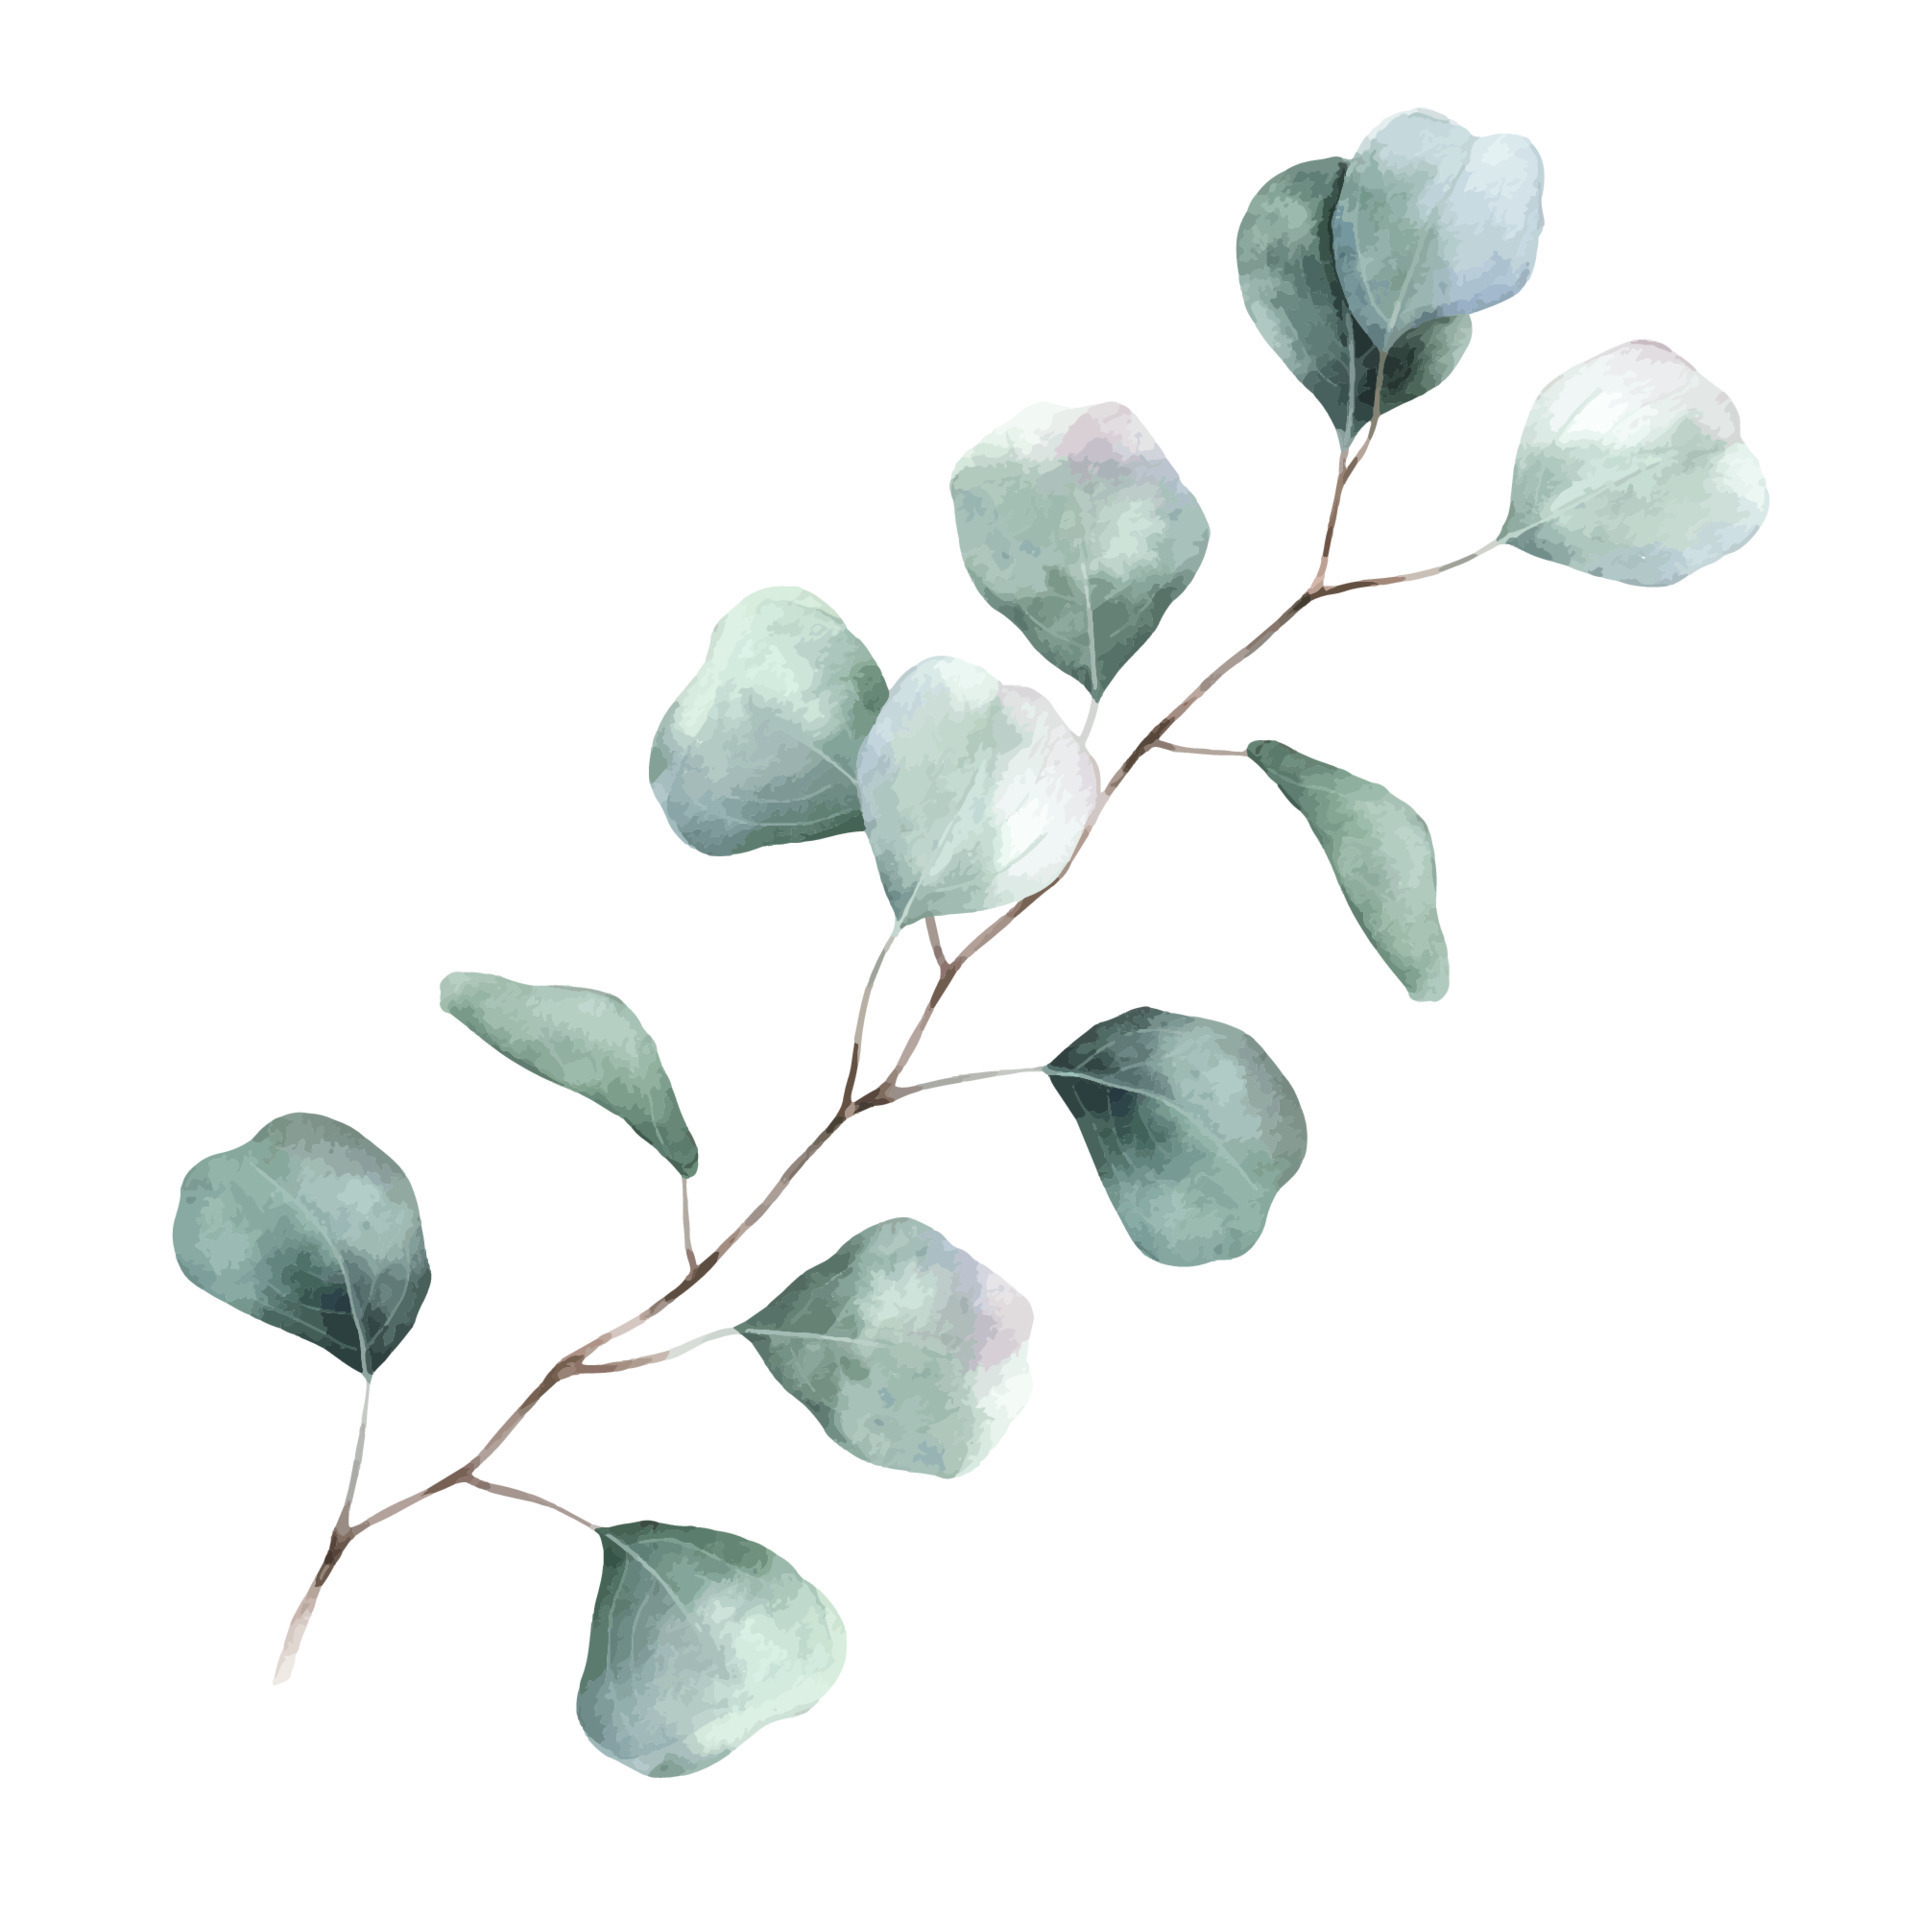 Feuille D'eucalyptus à L'aquarelle Et Dollar En Argent D'eucalyptus De  Branche. Illustration Botanique, Isolée